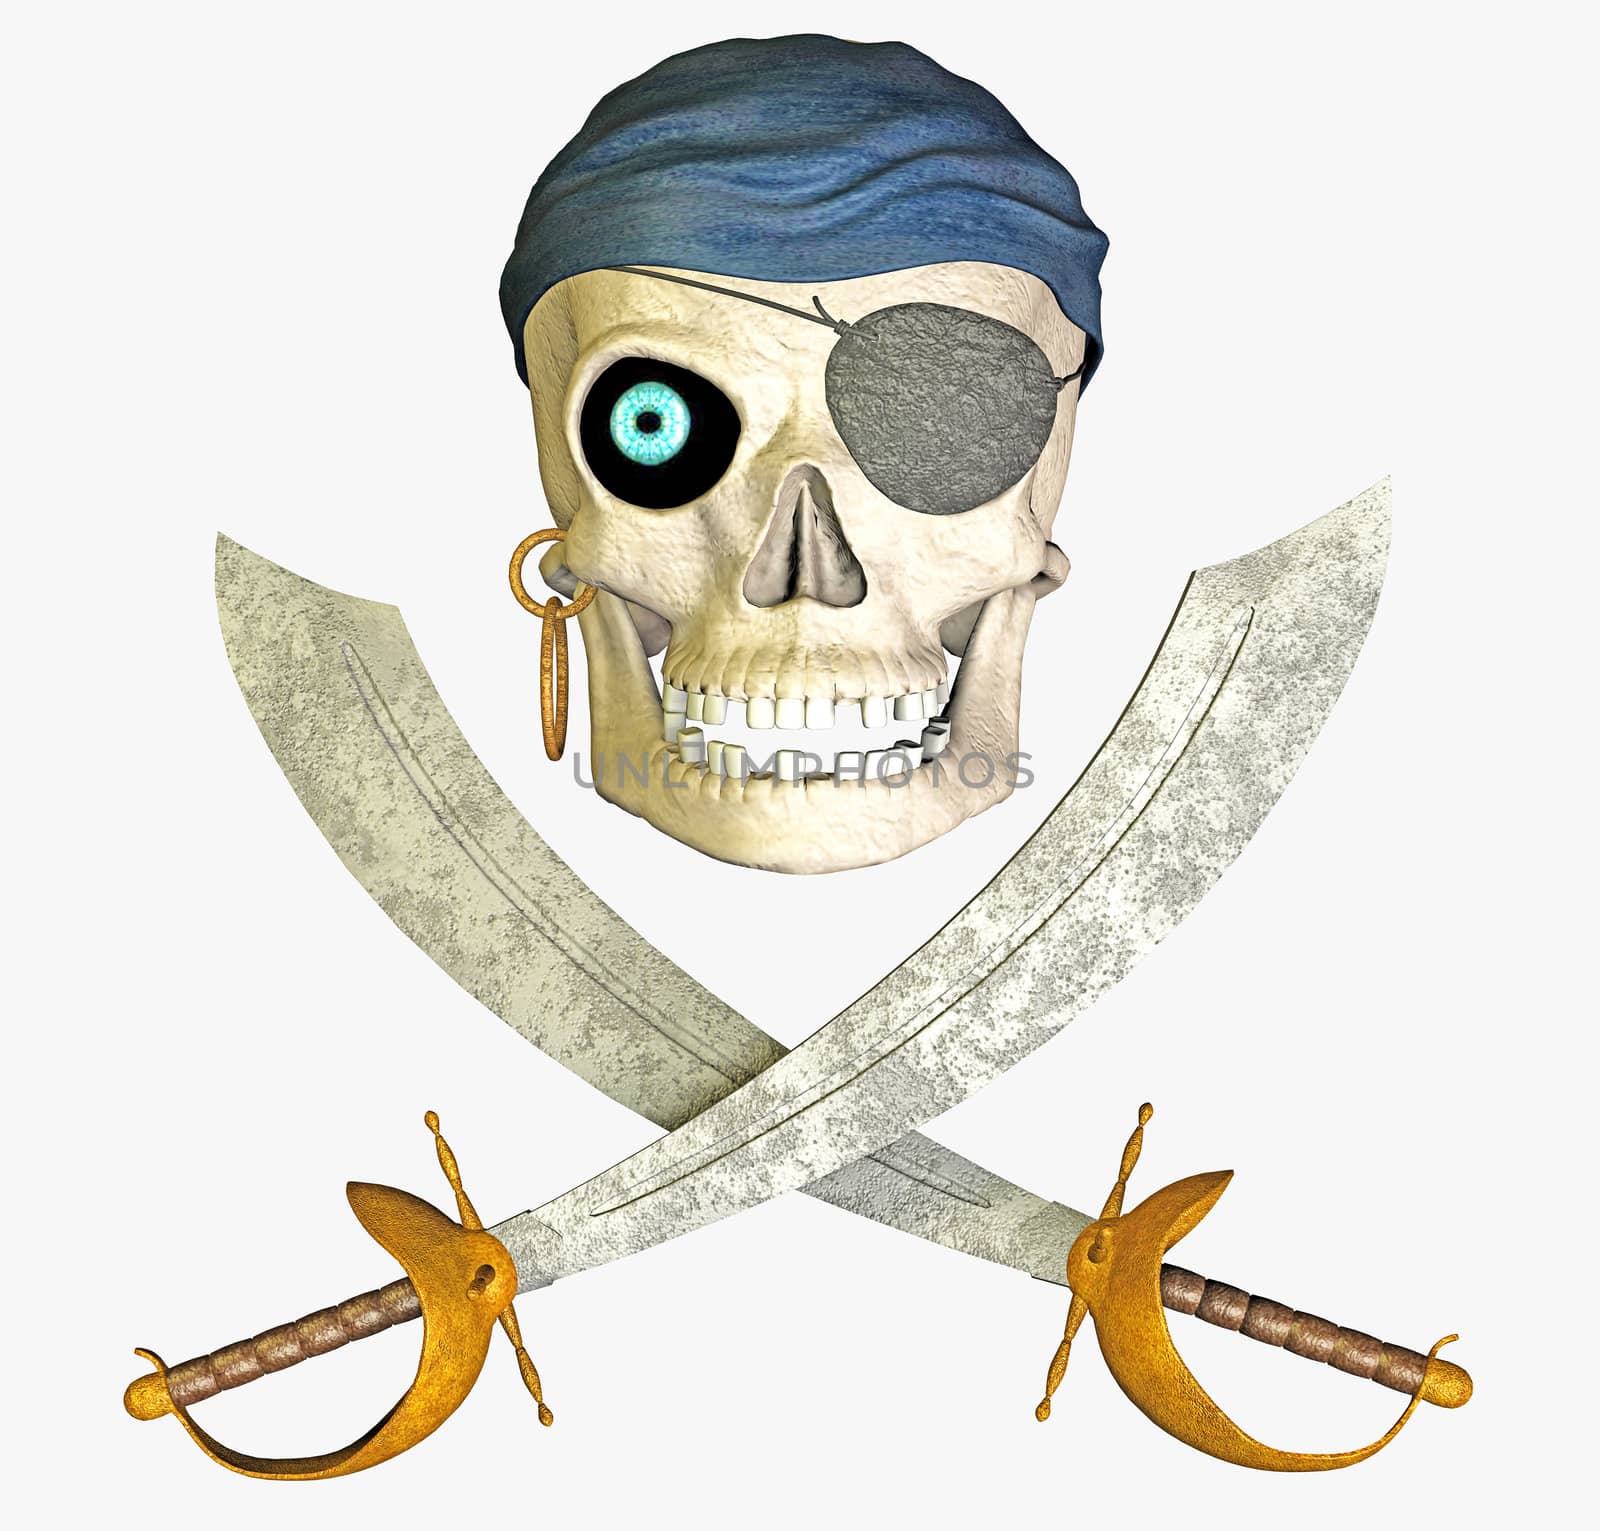 undead pirate by ancello